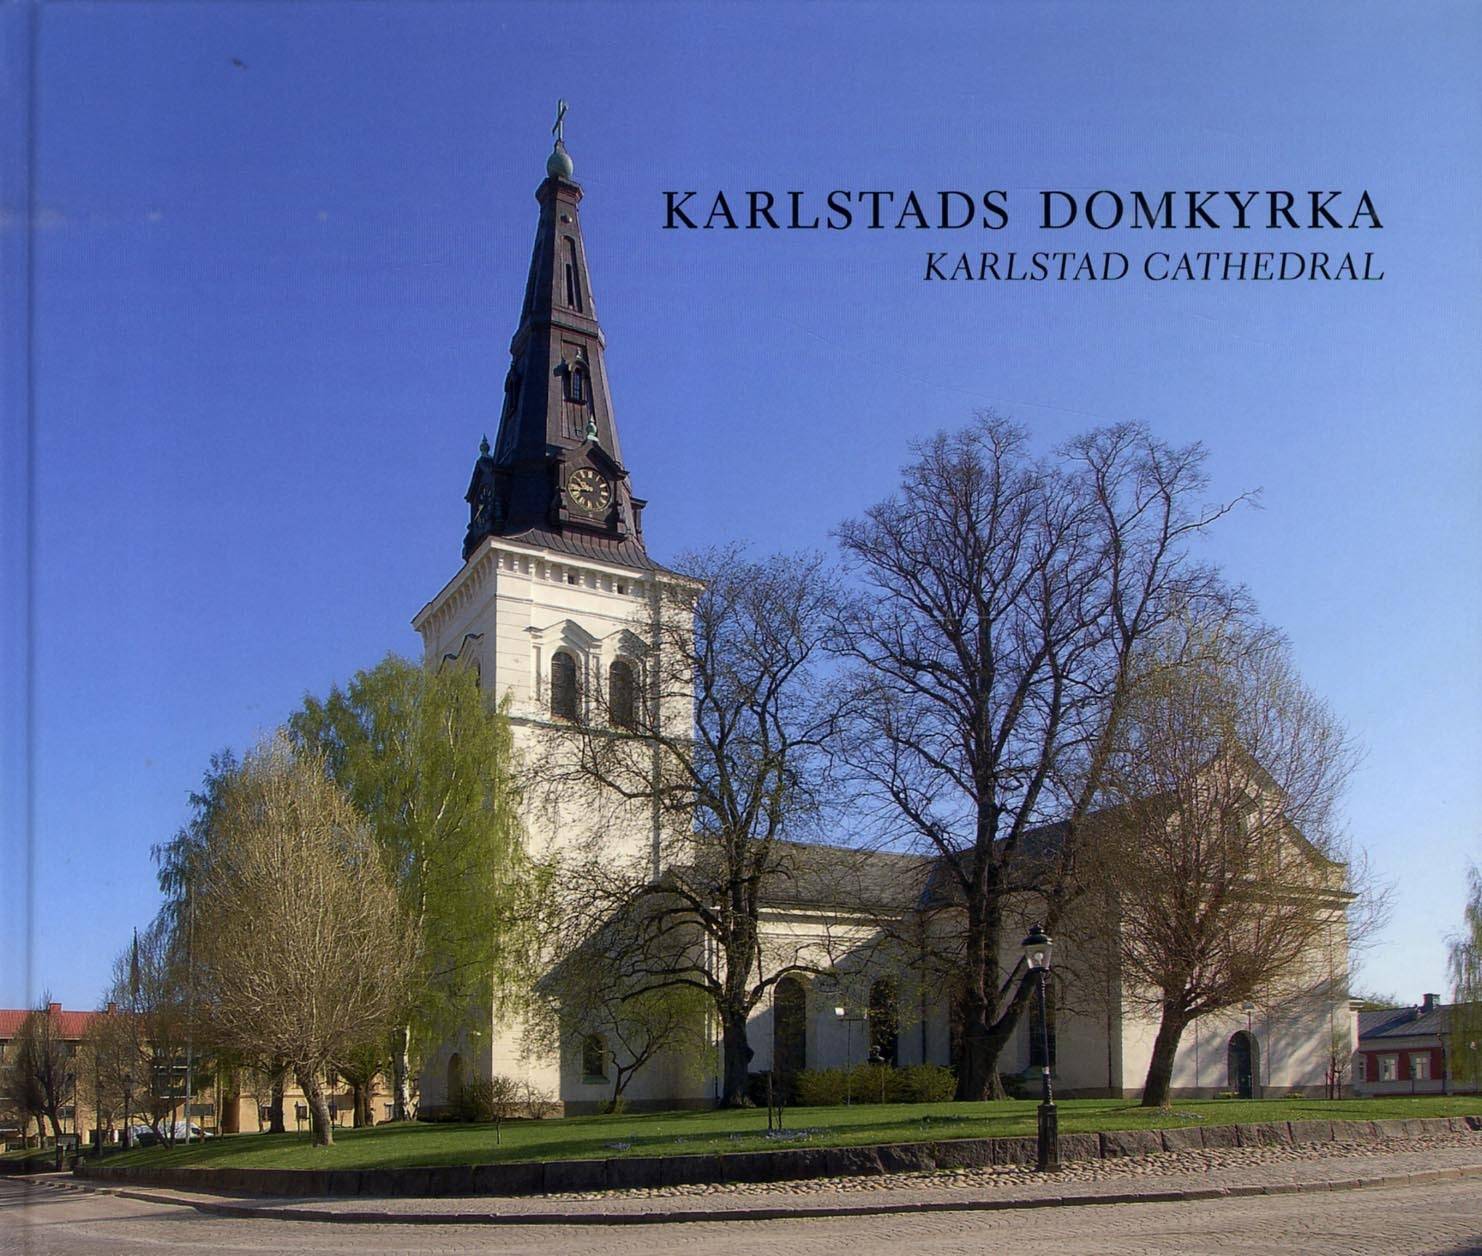 Karlstads domkyrka = Karlstad Cathedral